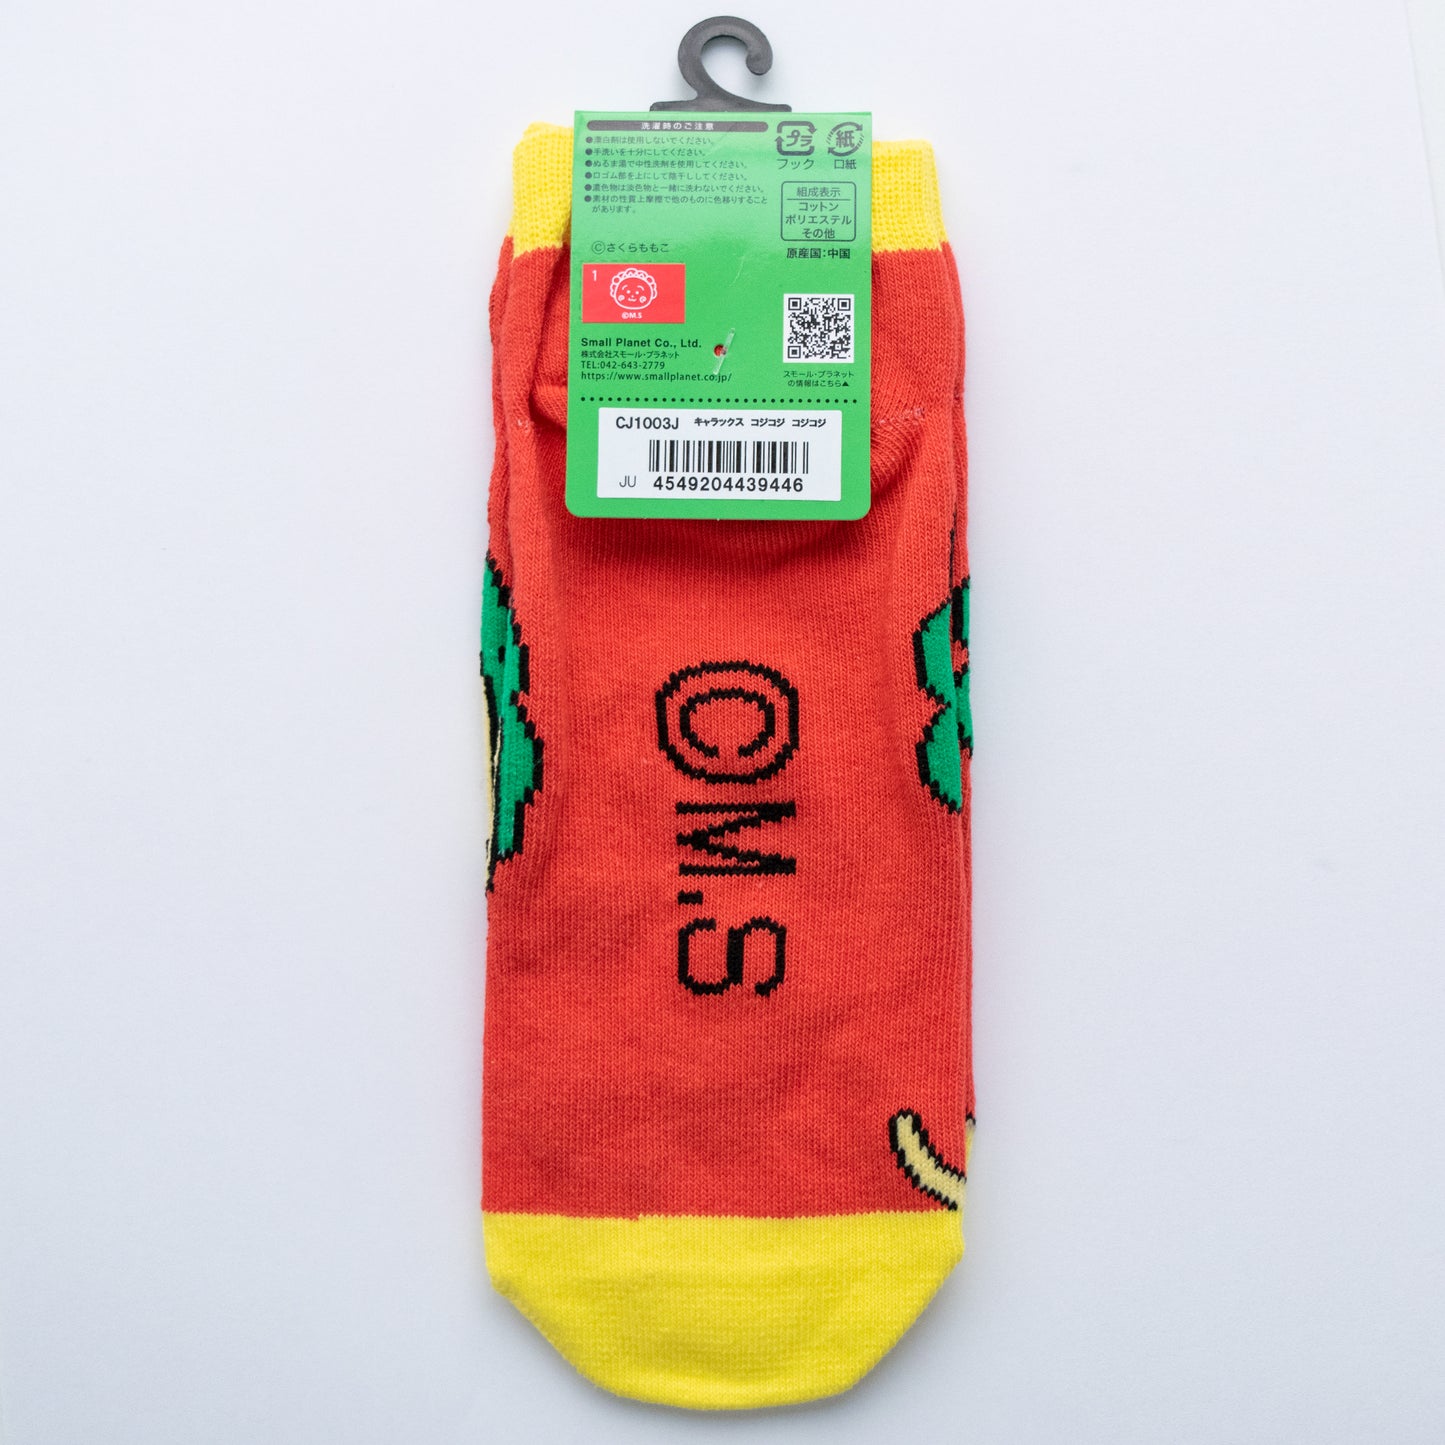 Cojicoji character socks